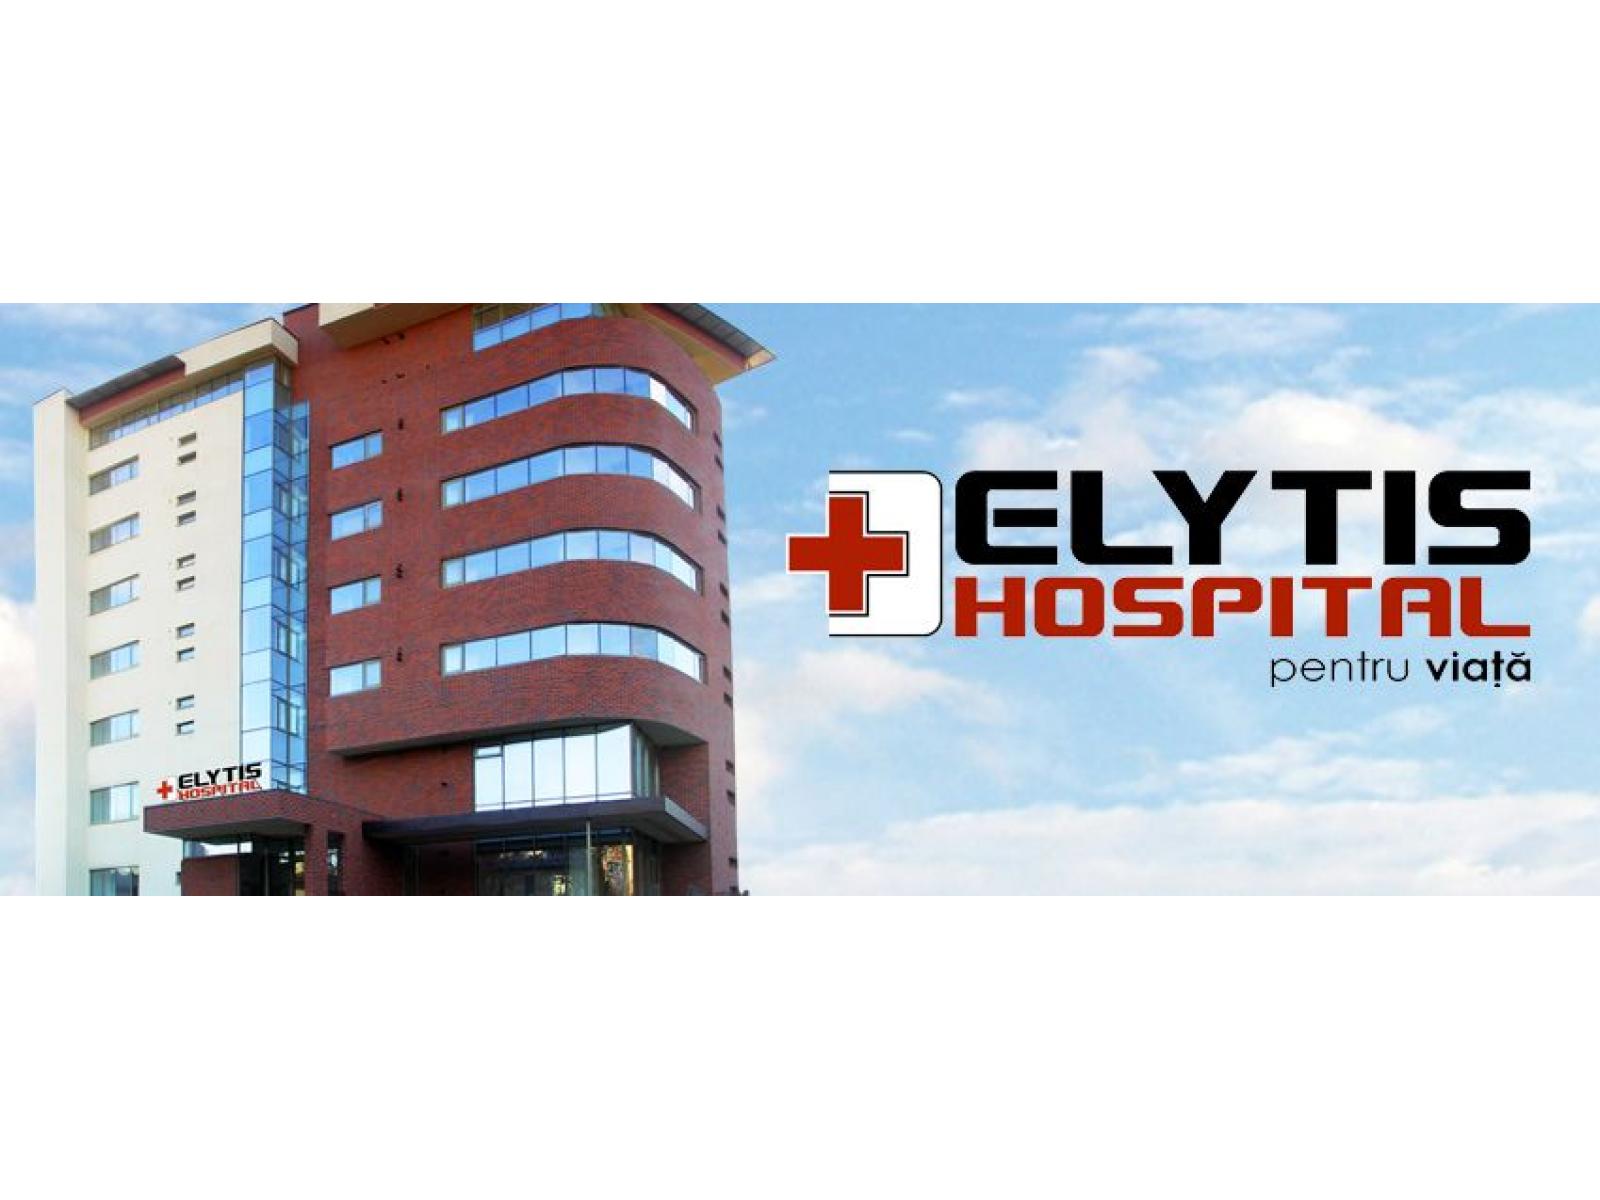 Elytis Hospital - cover.jpg